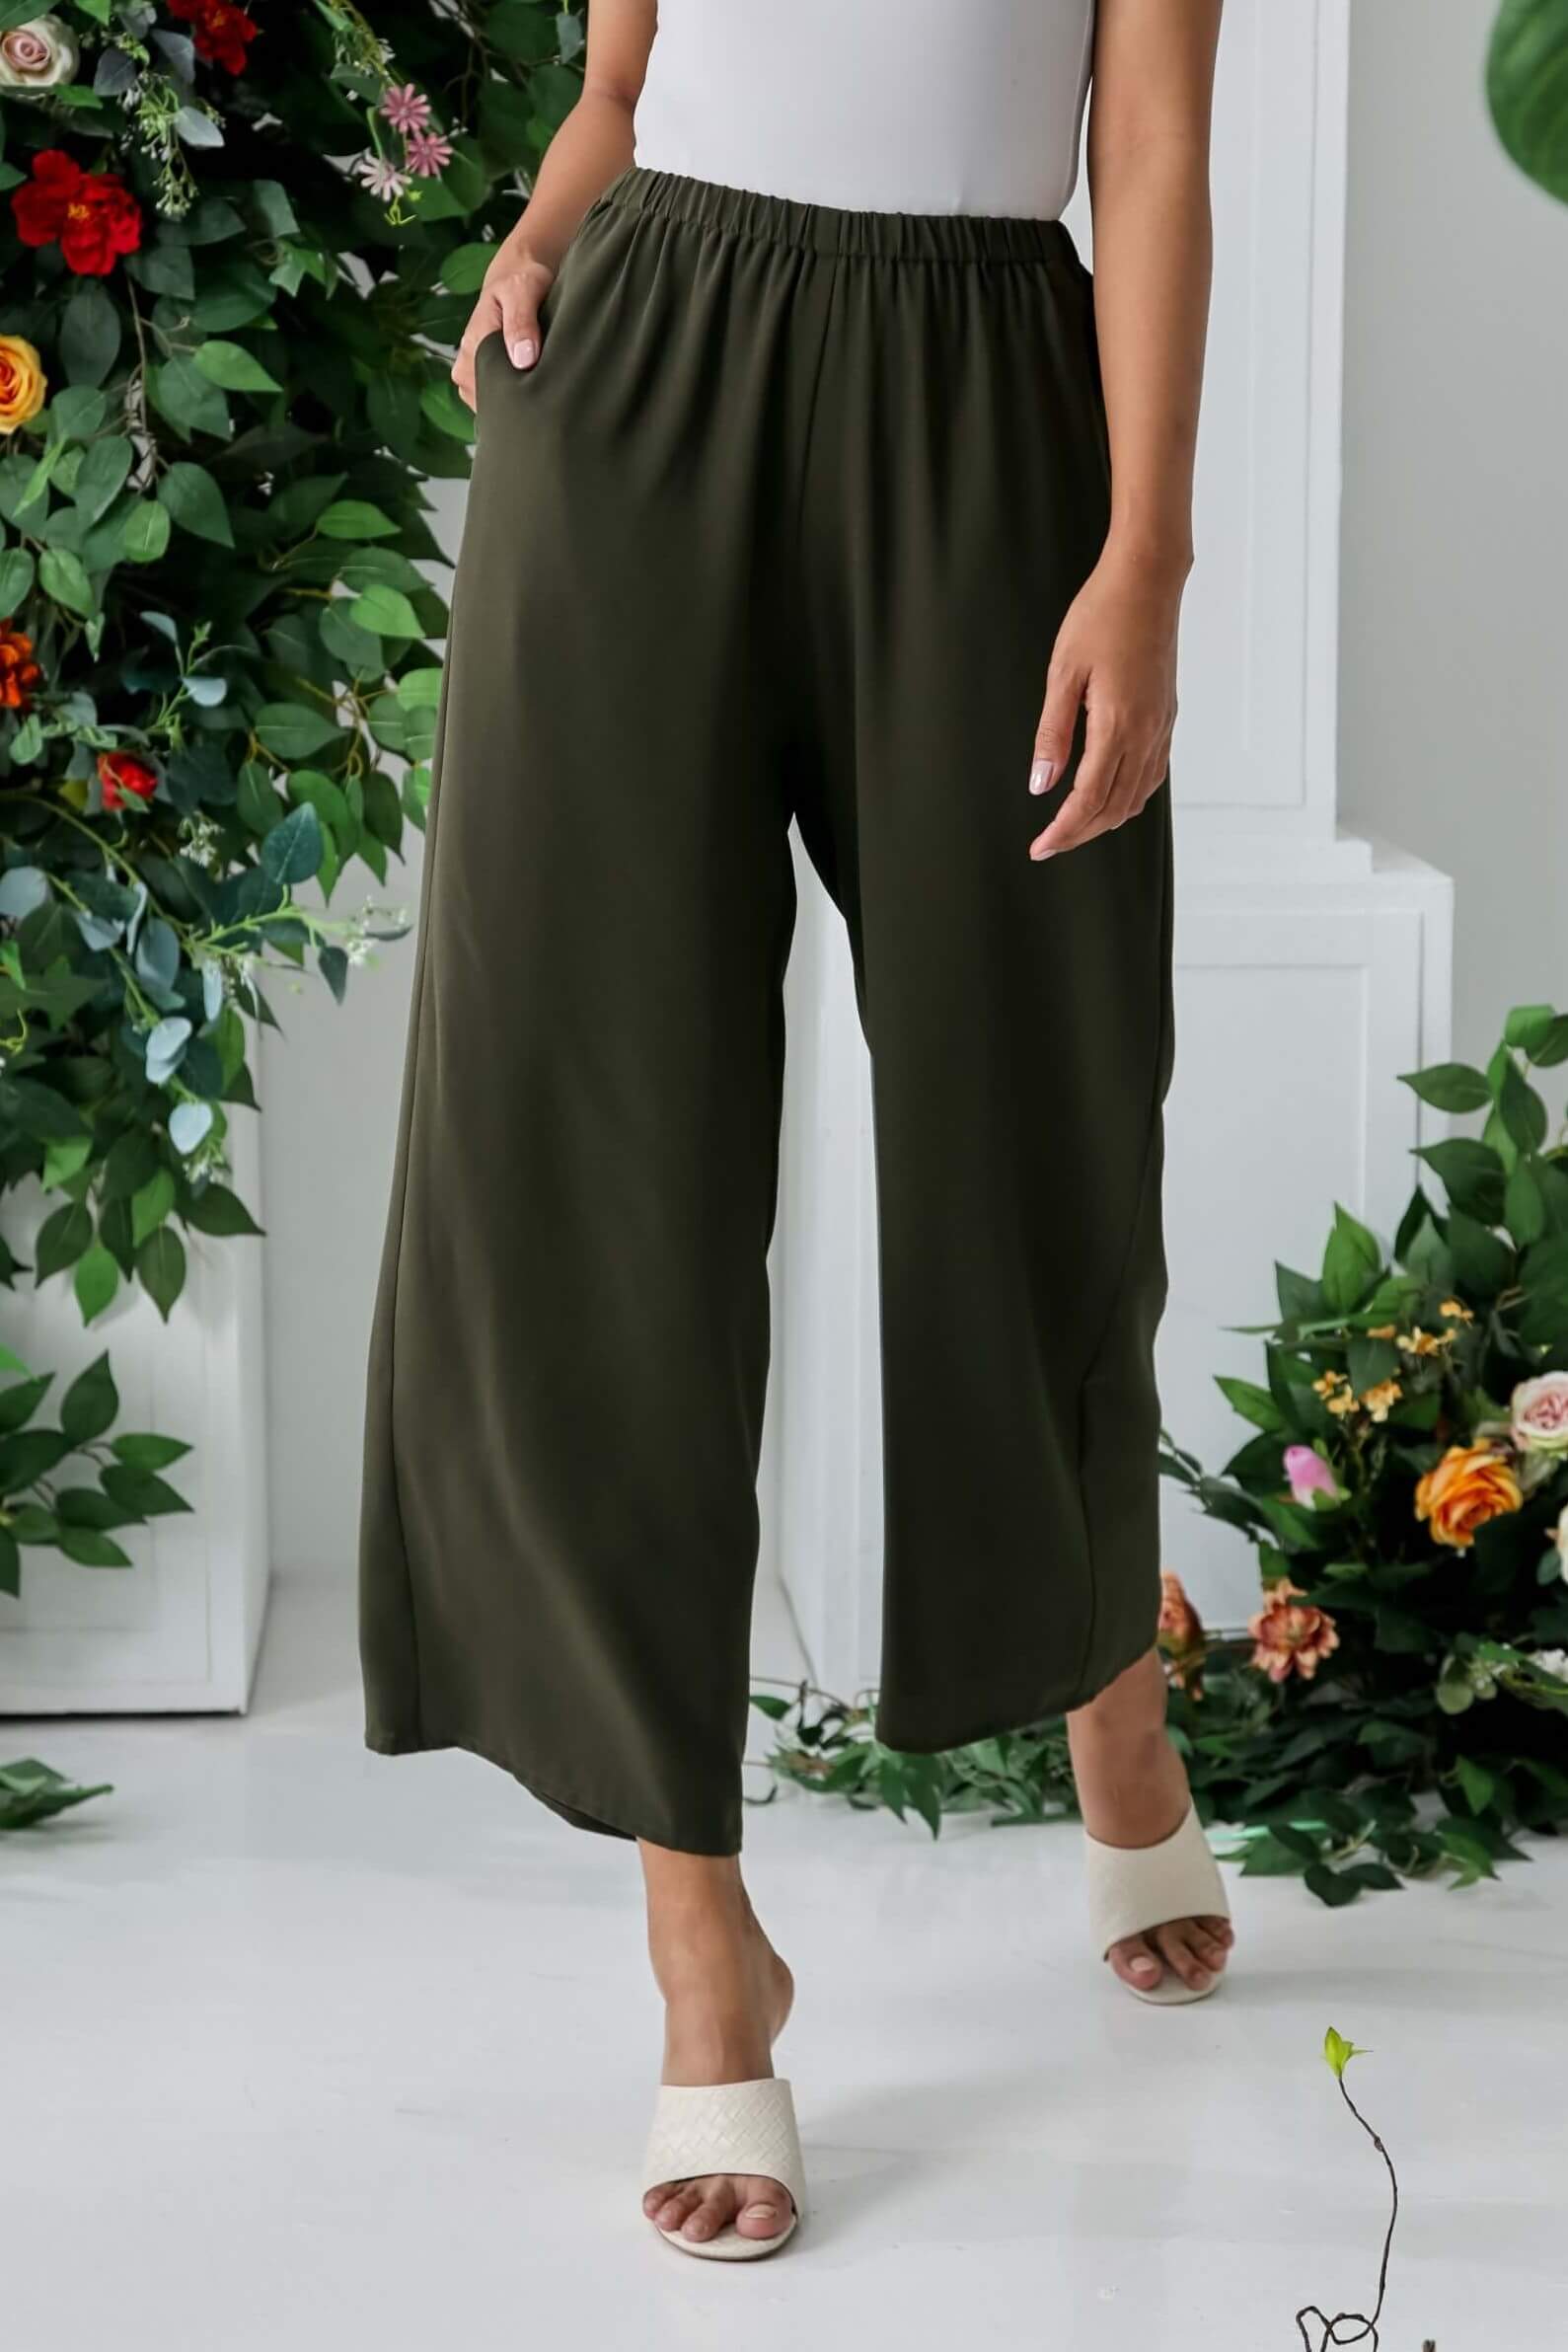 Yuna Olive Dress + Wide Leg Pants (5)